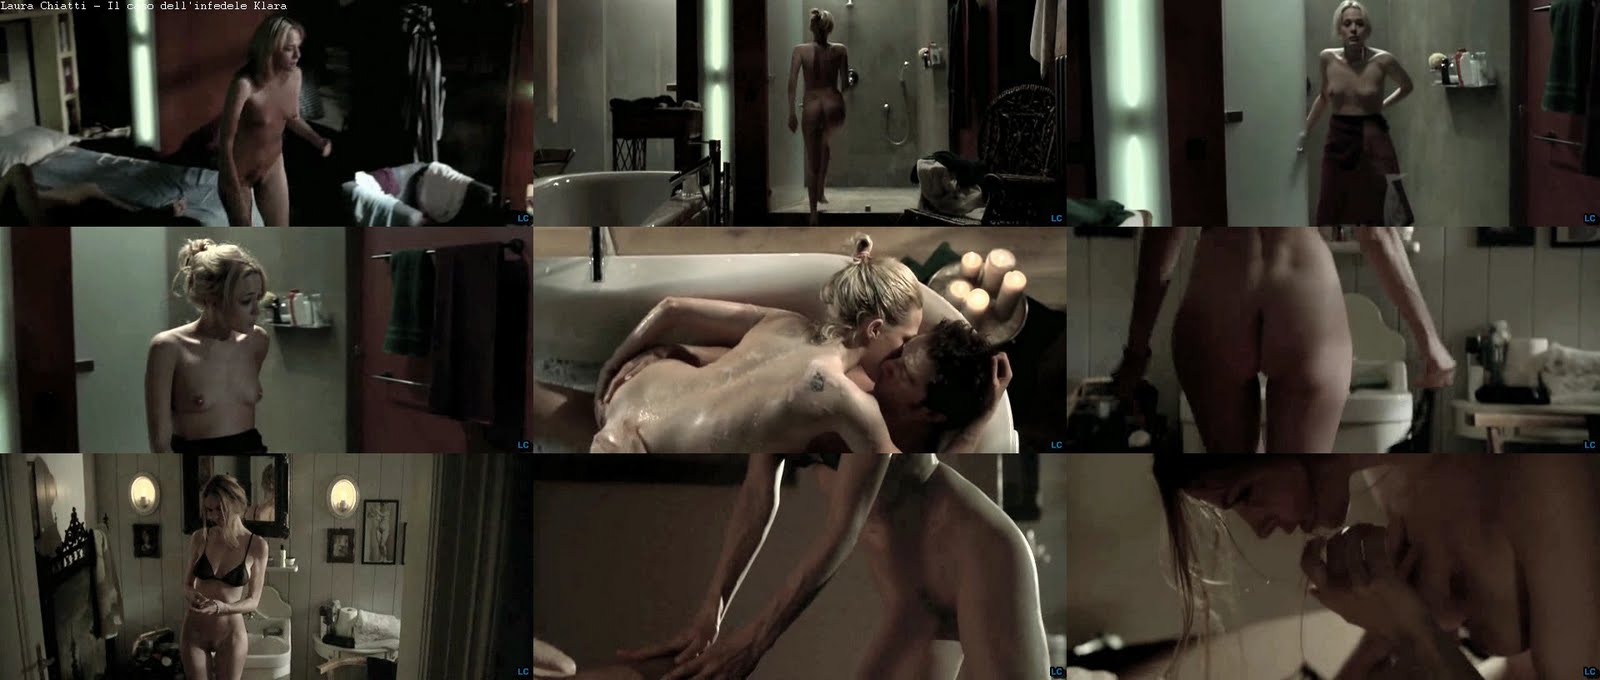 Pure Nude: Laura+Chiatti nude.